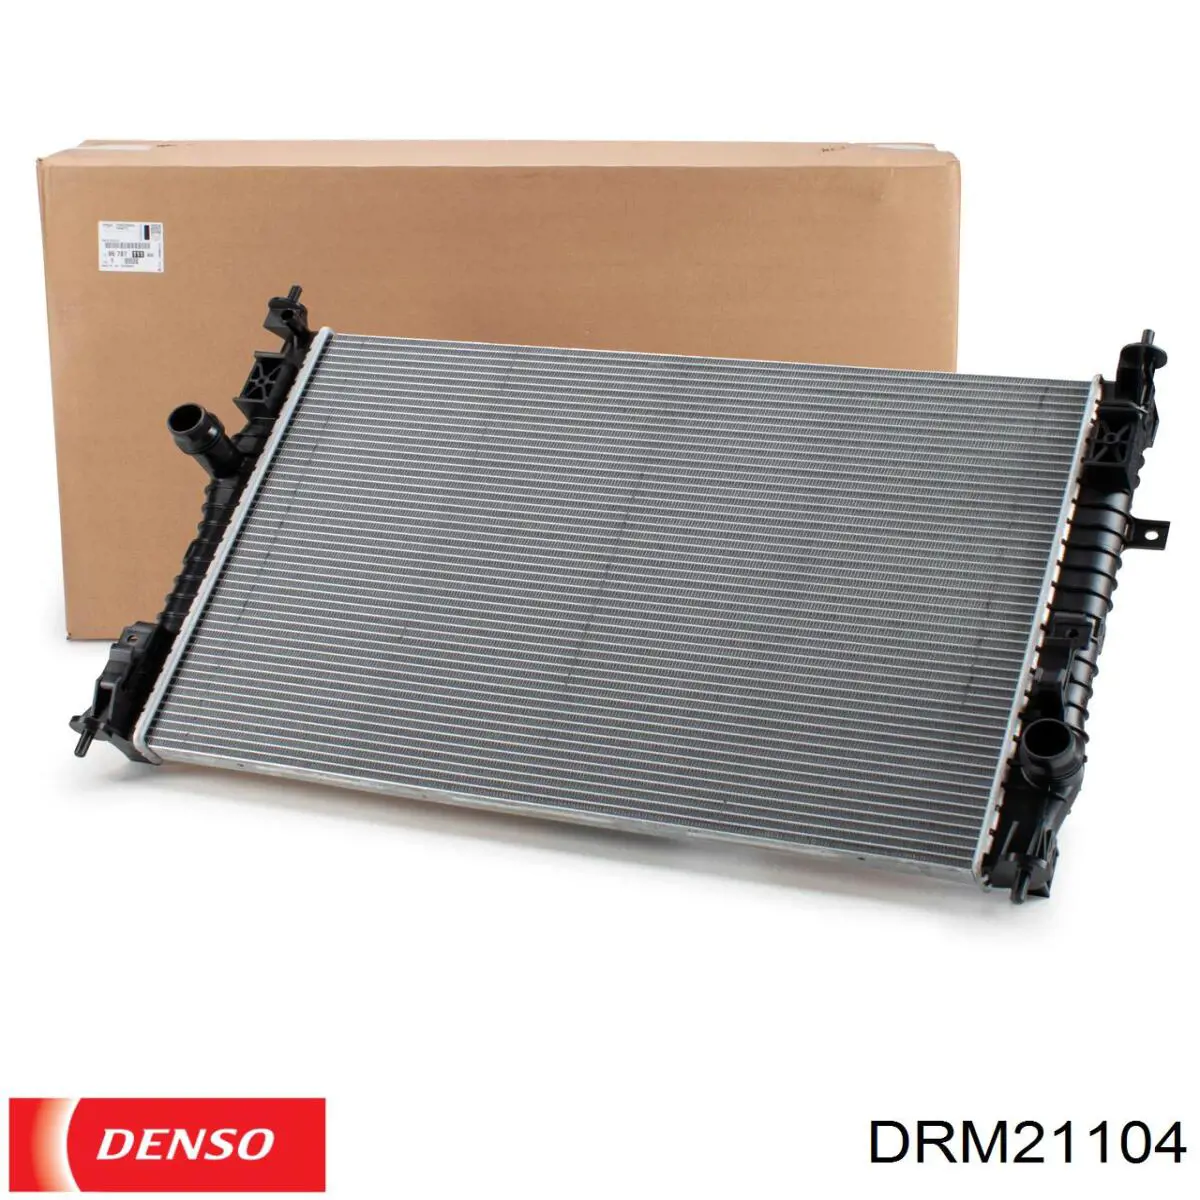 DRM21104 Denso radiador